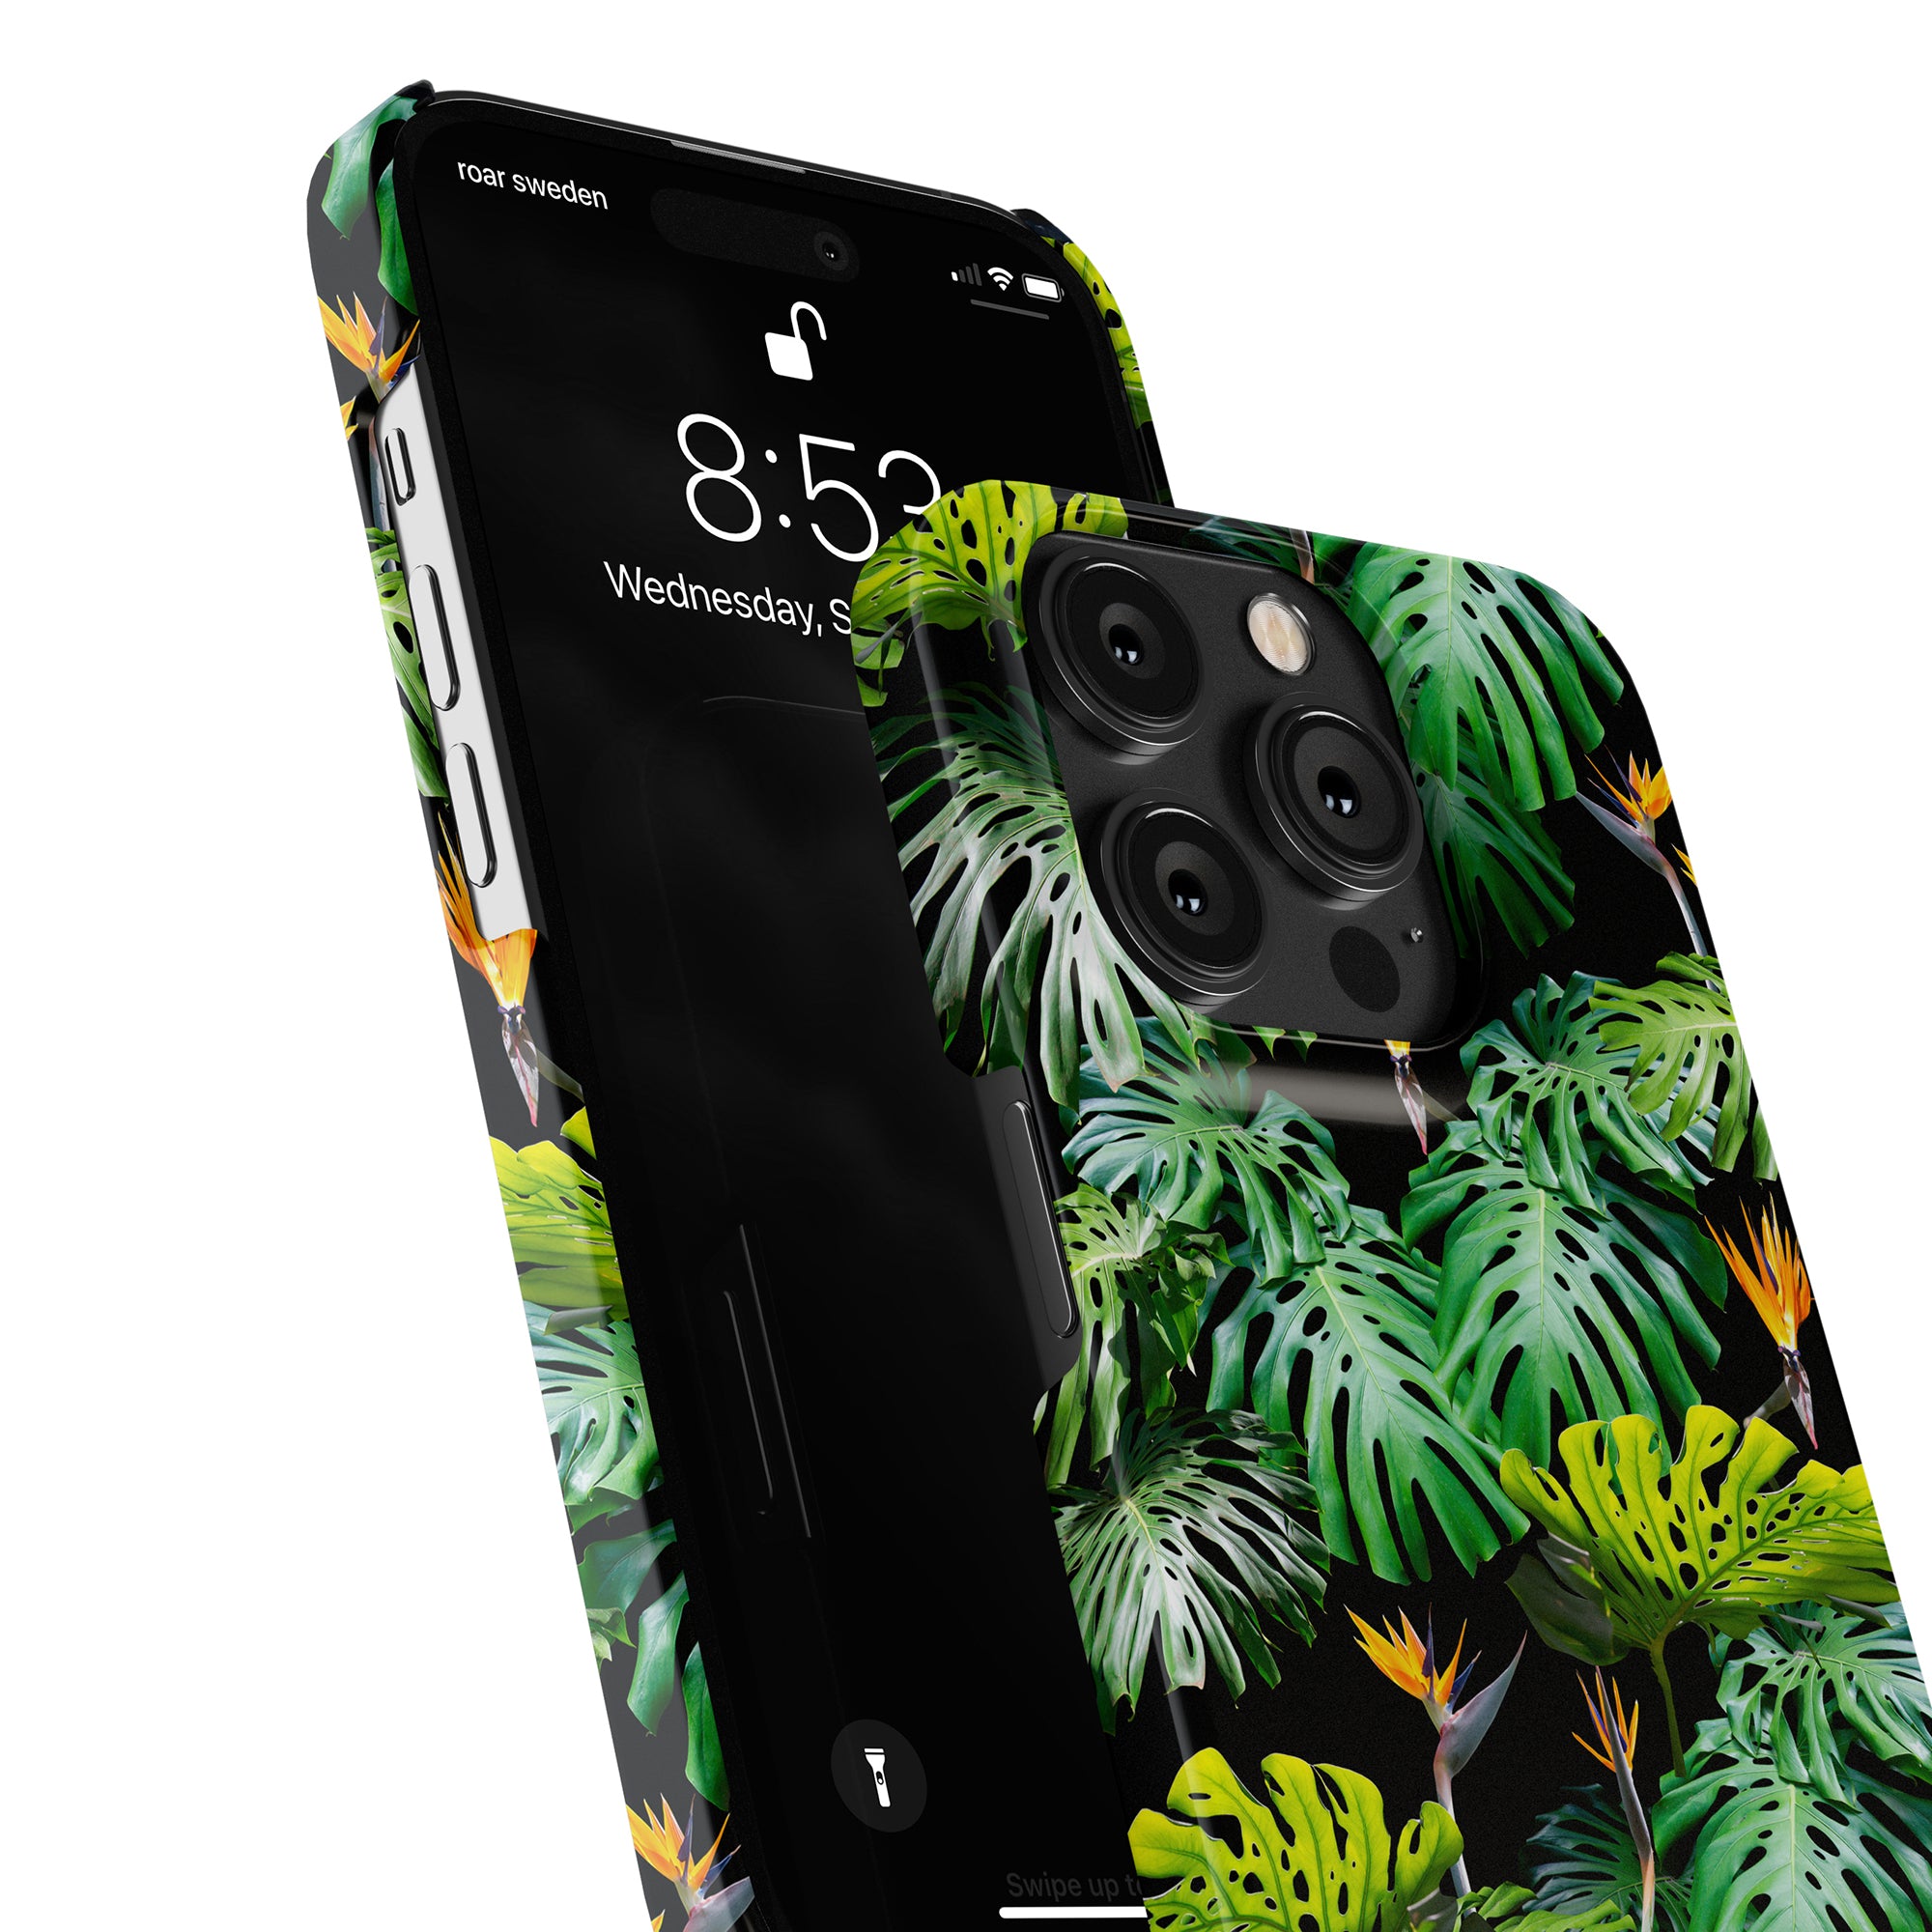 Ett elegant Hawaii - Slim fodral prydt med livfulla tropiska löv, som ger både skydd och en touch av naturinspirerad charm till din telefon.